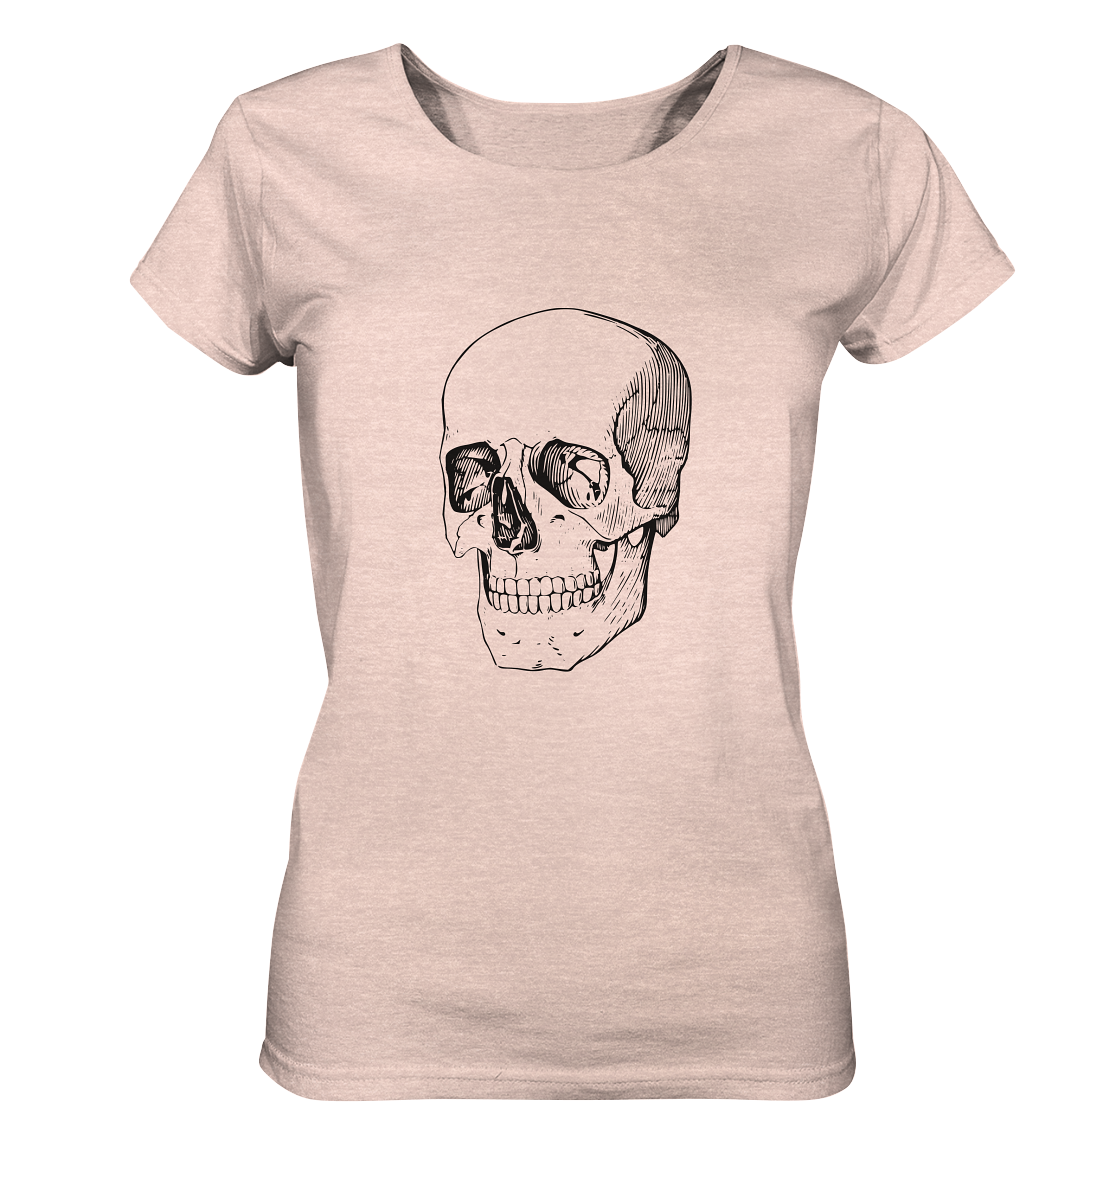 Totenkopf Black No.1 - Ladies Organic Shirt (meliert)